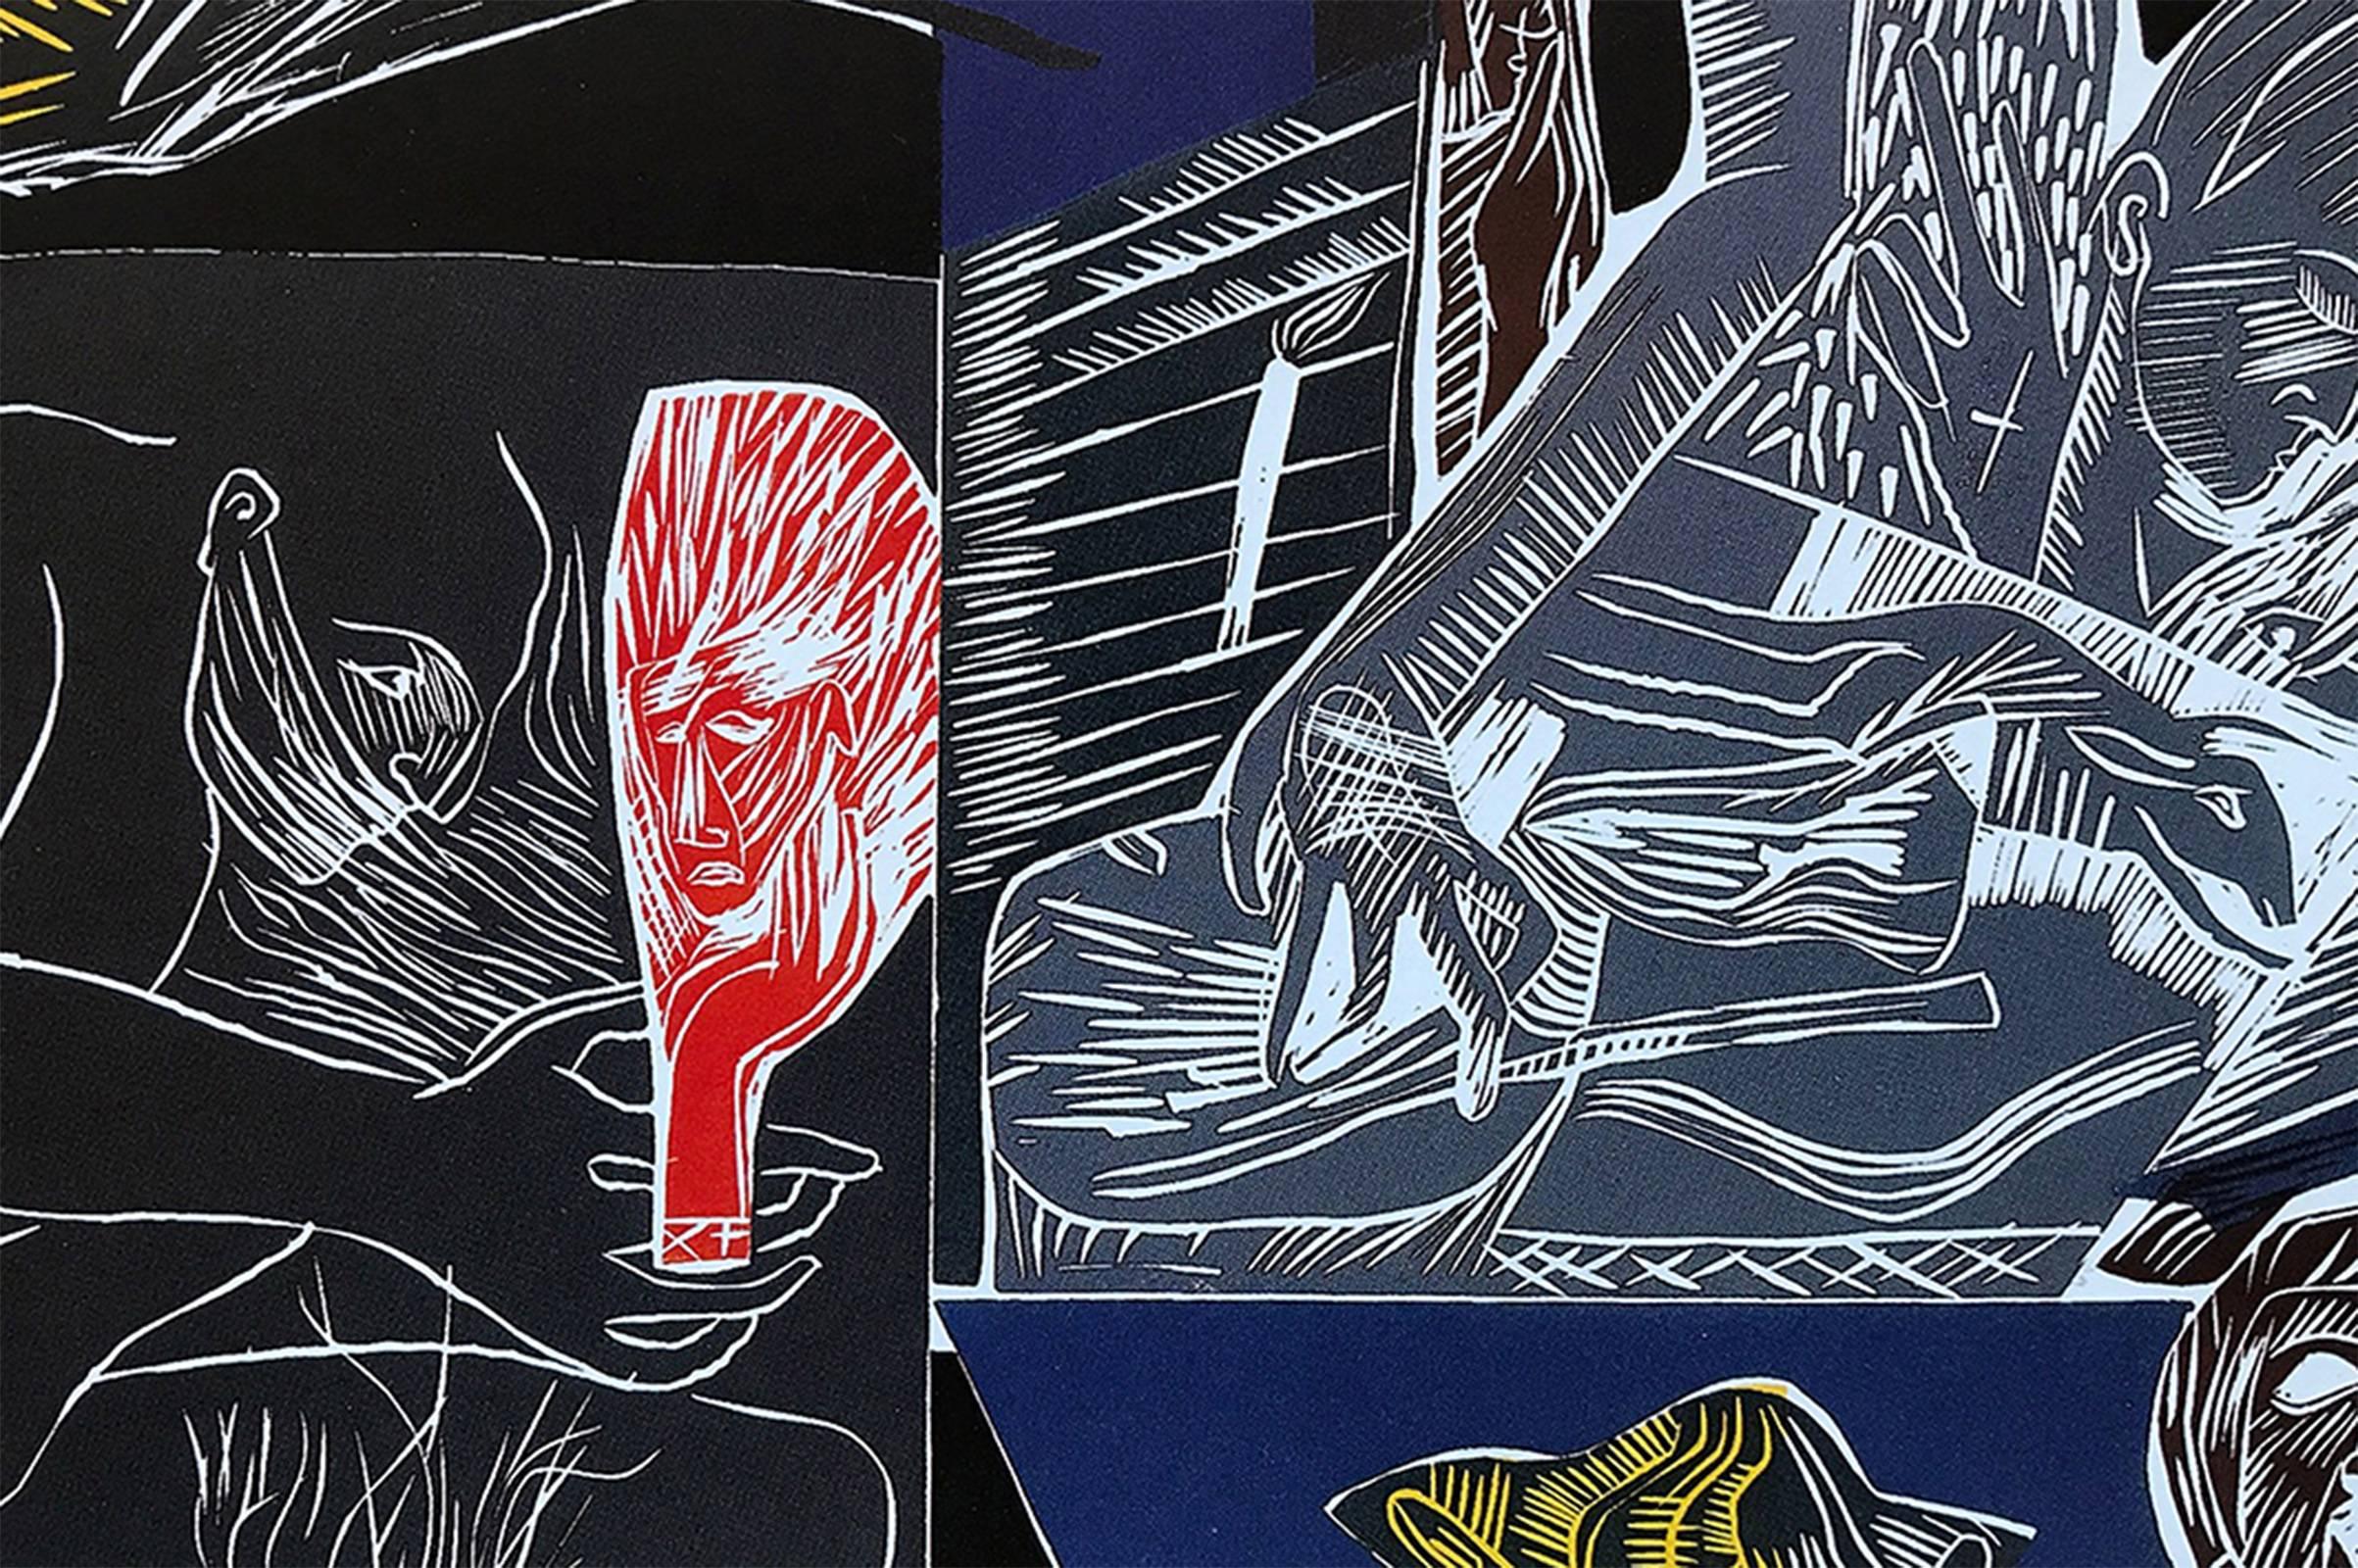 Ulysses - Set of 4 woodcuts - Black Print by Mimmo Paladino